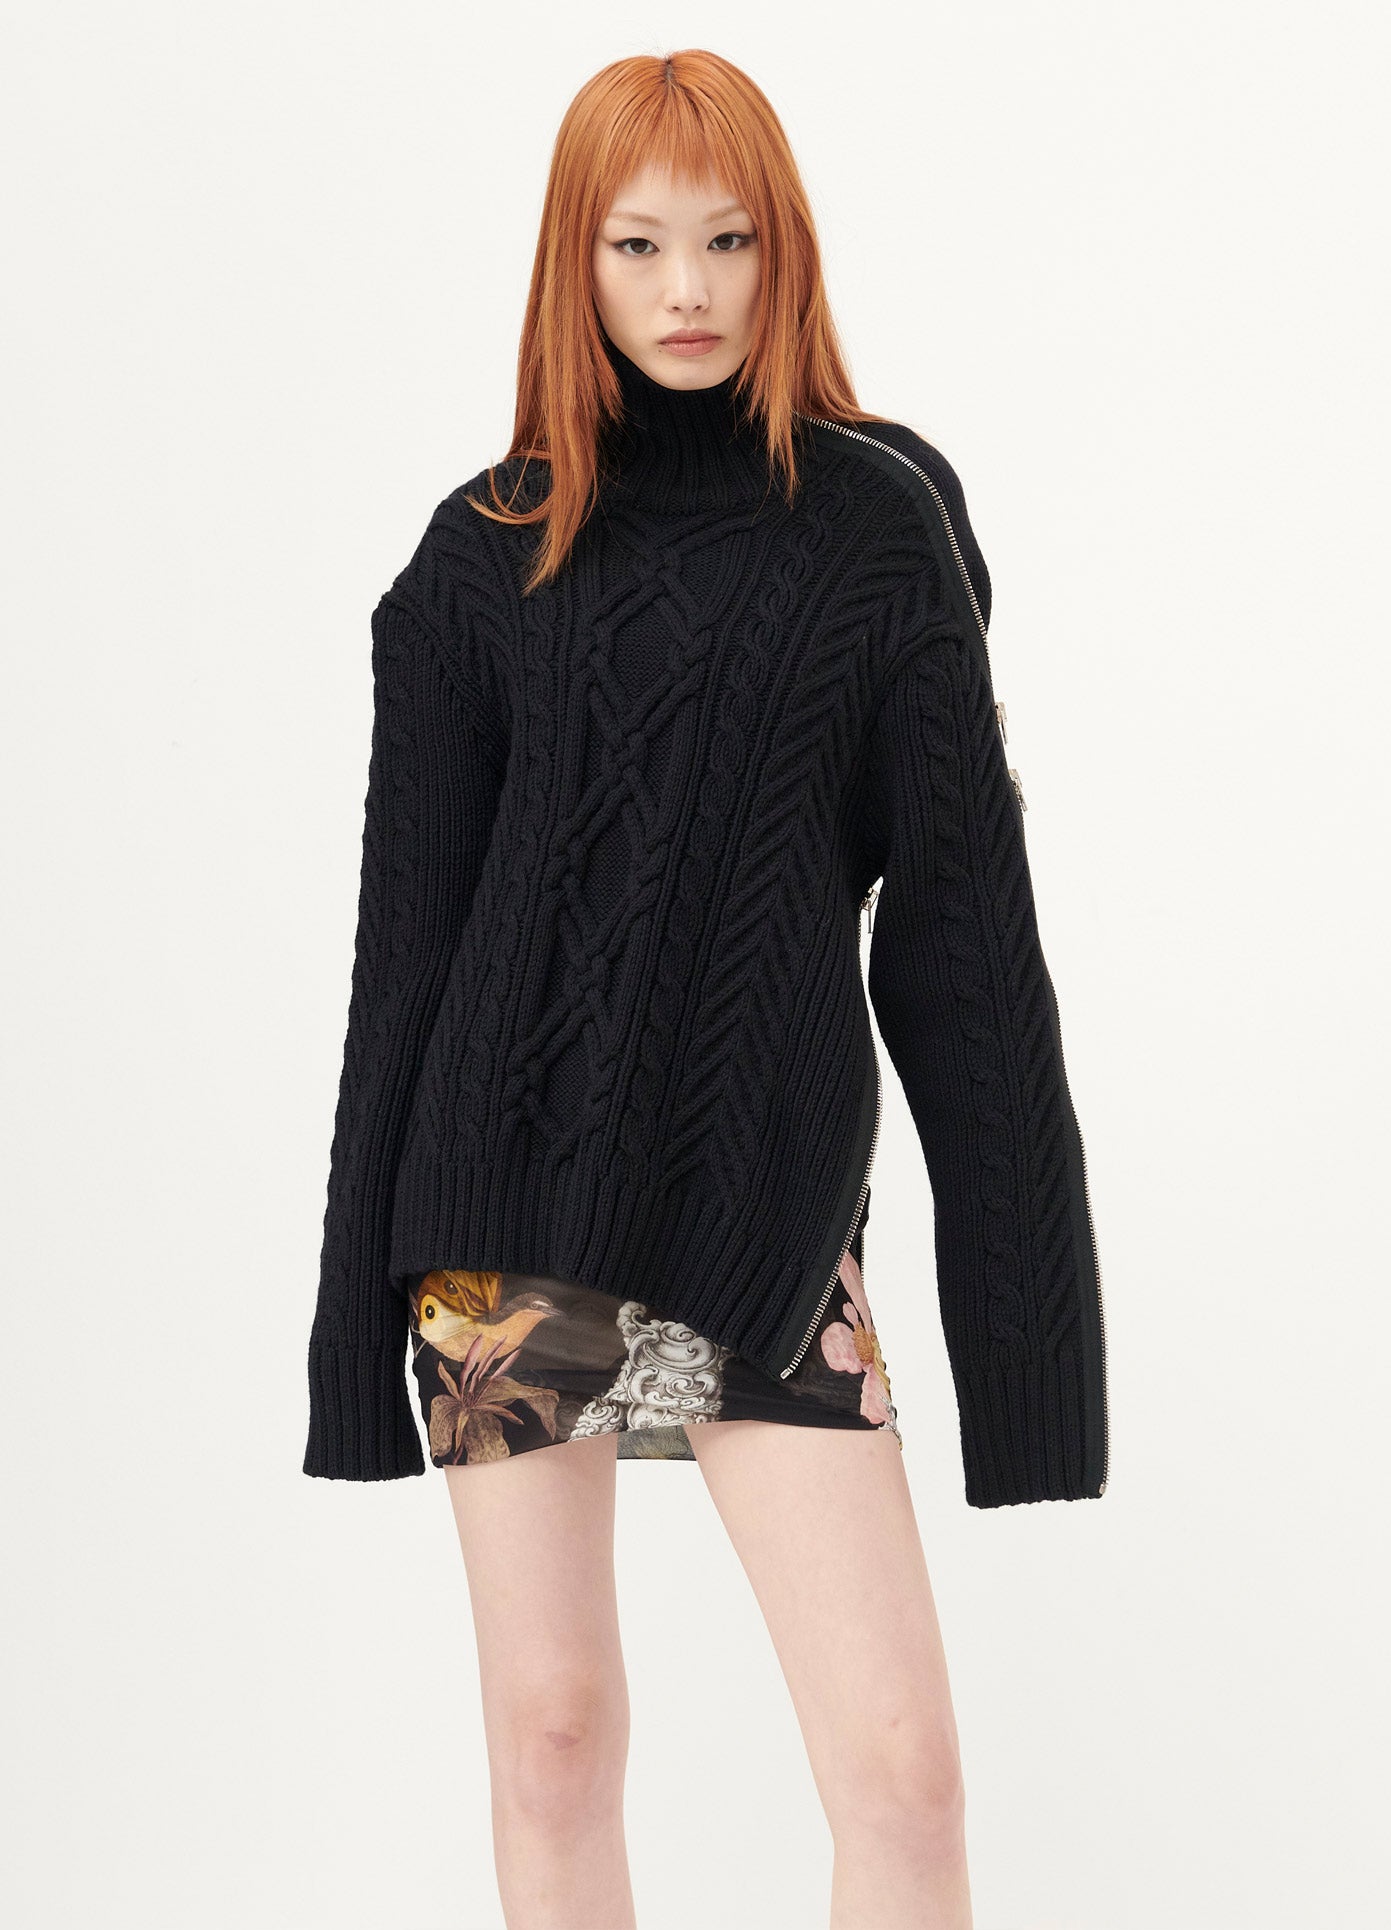 Shop Knitwear l MONSE Official Site